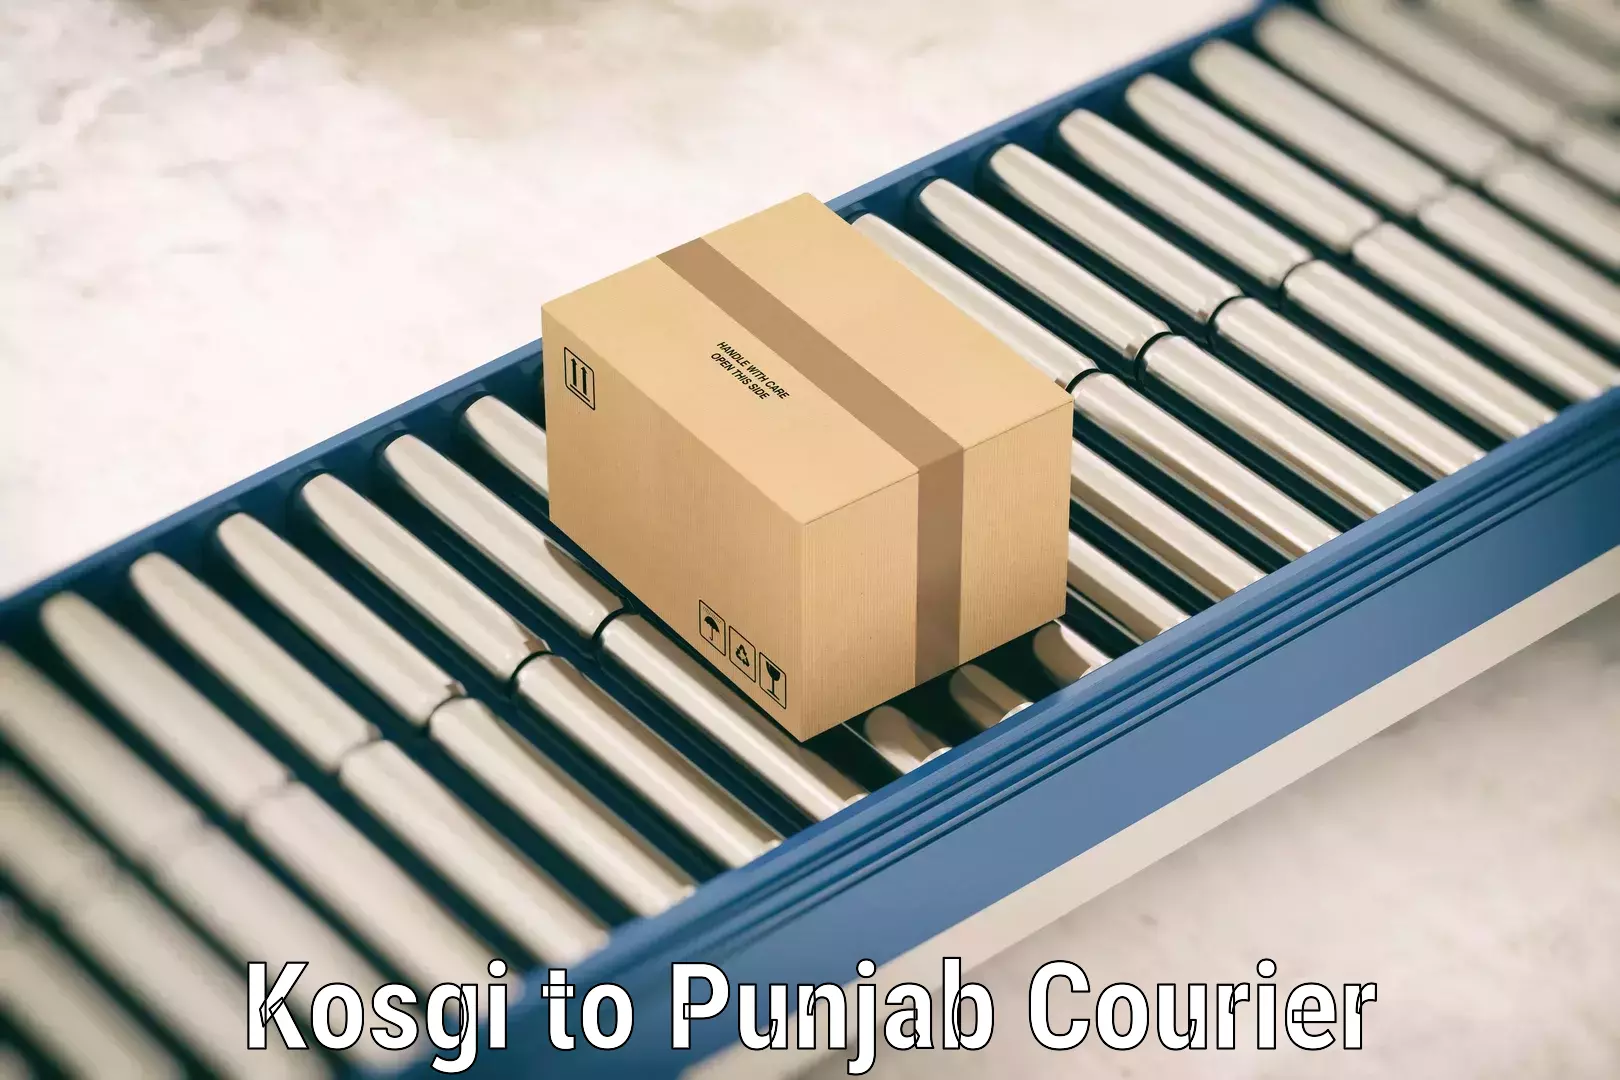 Artwork baggage courier Kosgi to Punjab